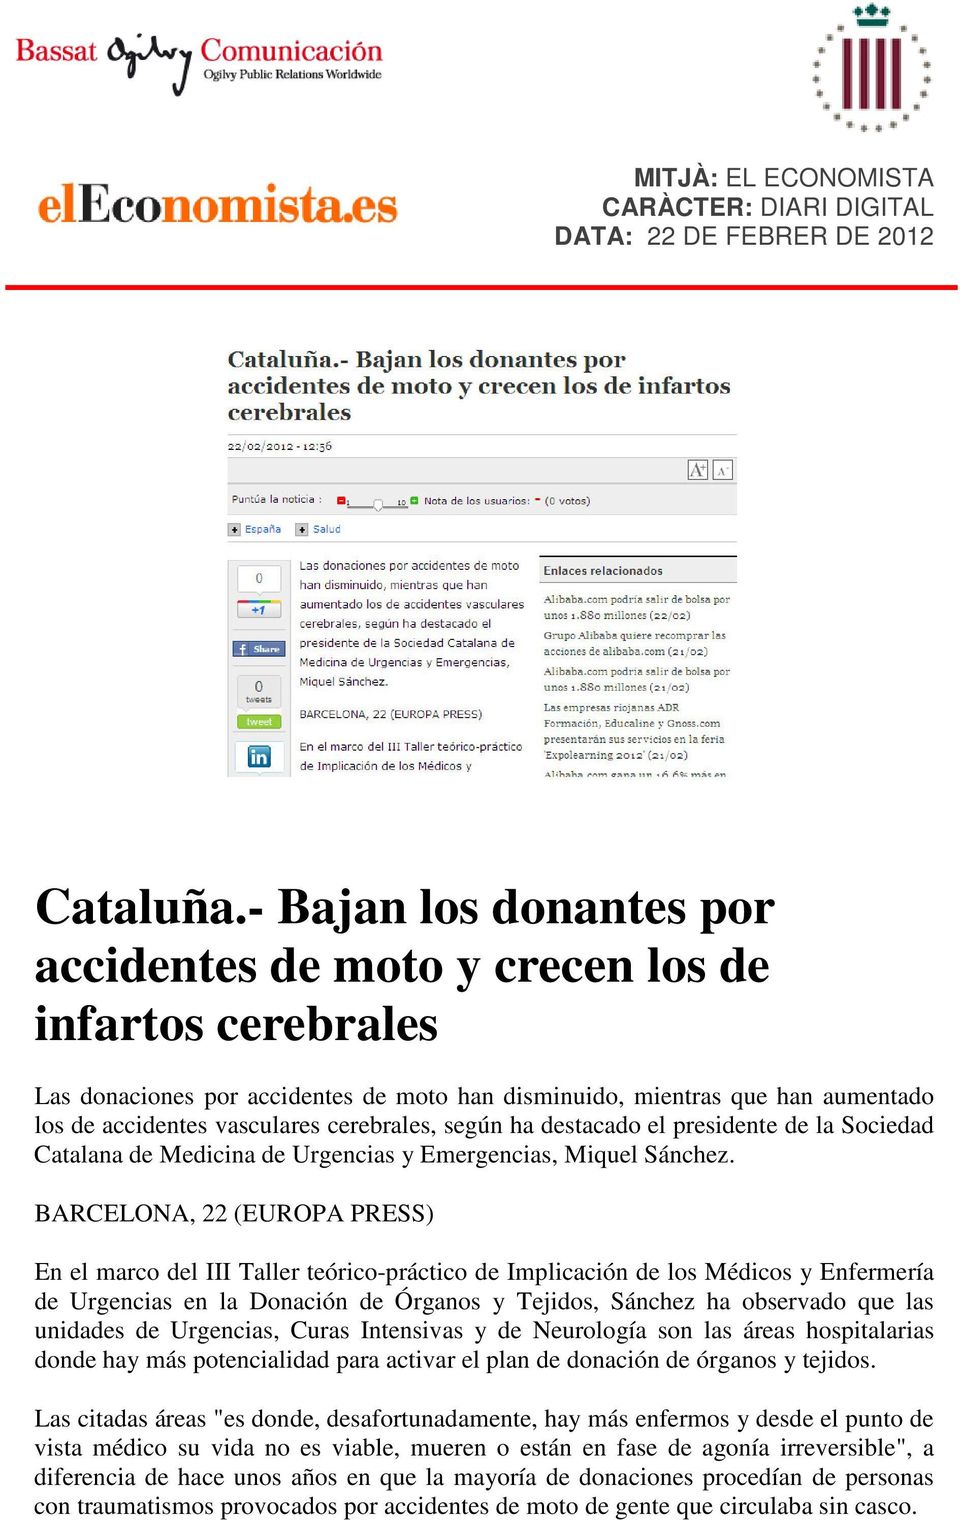 cerebrales, según ha destacado el presidente de la Sociedad Catalana de Medicina de Urgencias y Emergencias, Miquel Sánchez.